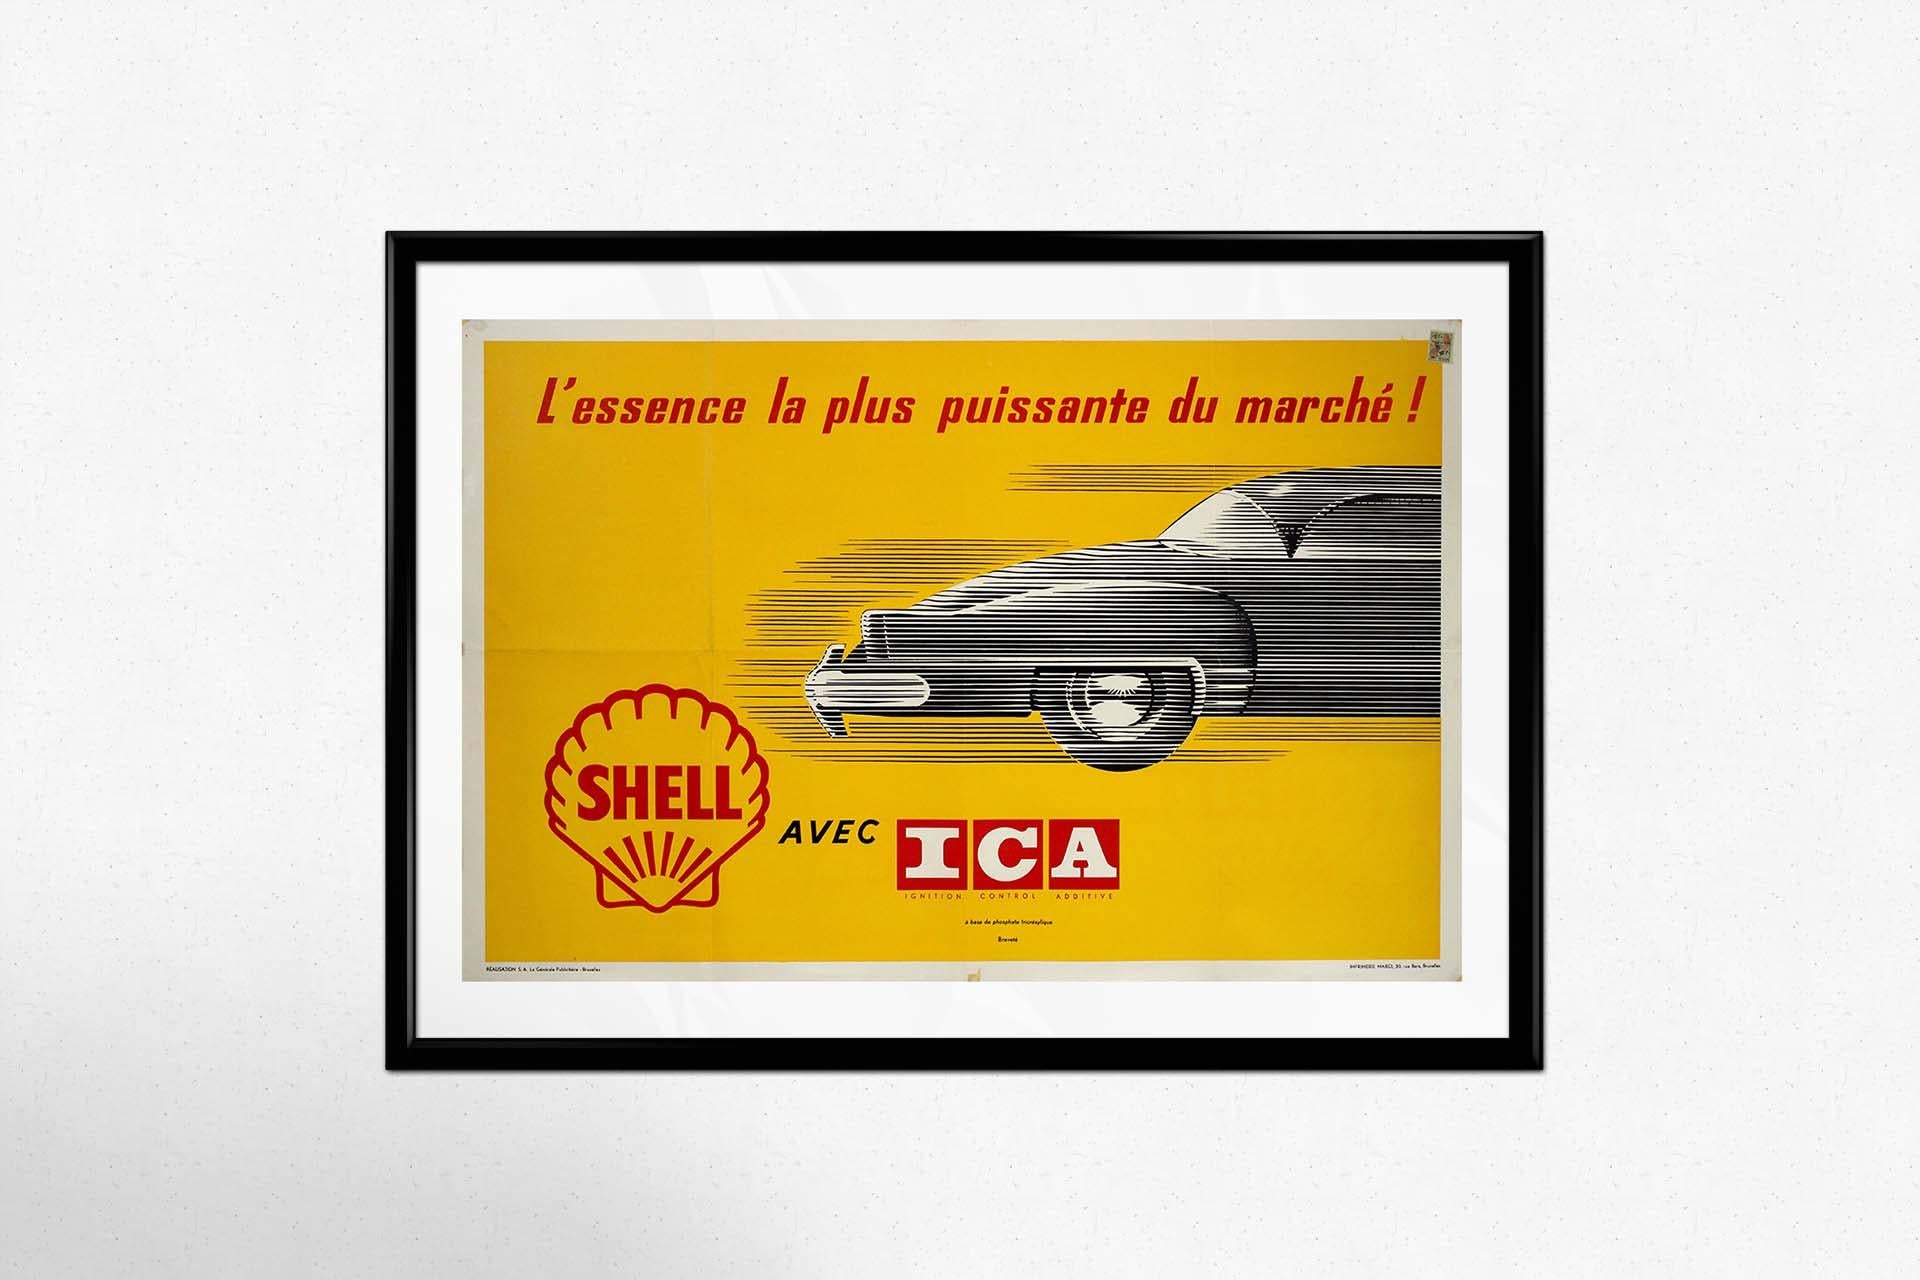 In der Welt der alten Werbeplakate für Reisen sticht ein ikonisches Stück hervor: das Originalplakat von Shell mit dem Ignition Control Additive (ICA), das als der leistungsstärkste Kraftstoff auf dem Markt angepriesen wird. Dieses von Marci in